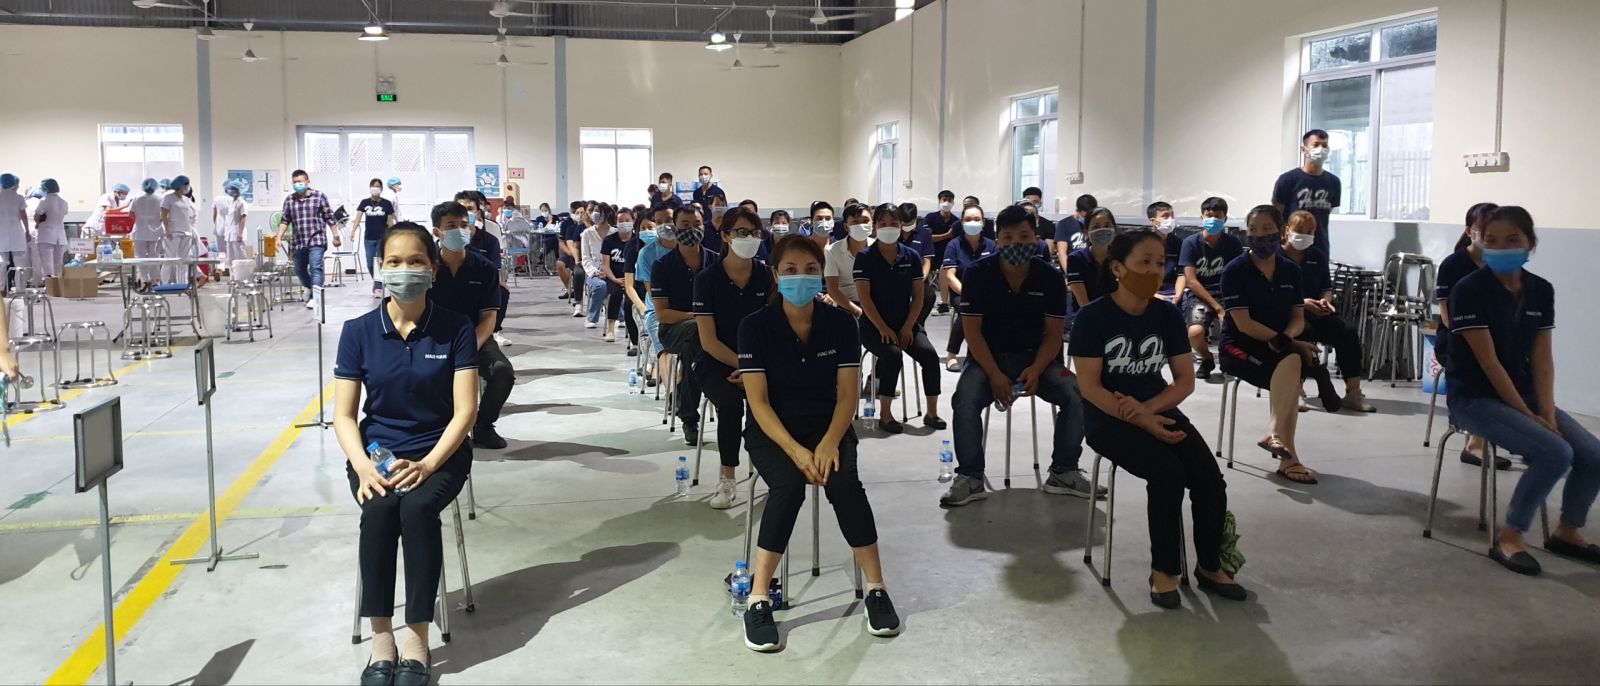 Hơn 700 cán bộ công nhân 100% Cty bao bì Hạo  Hãn tại Cụm CN Tân Liên Vĩnh Bảo được tiêm phòng vắc xin Vero Cell trong hôm nay